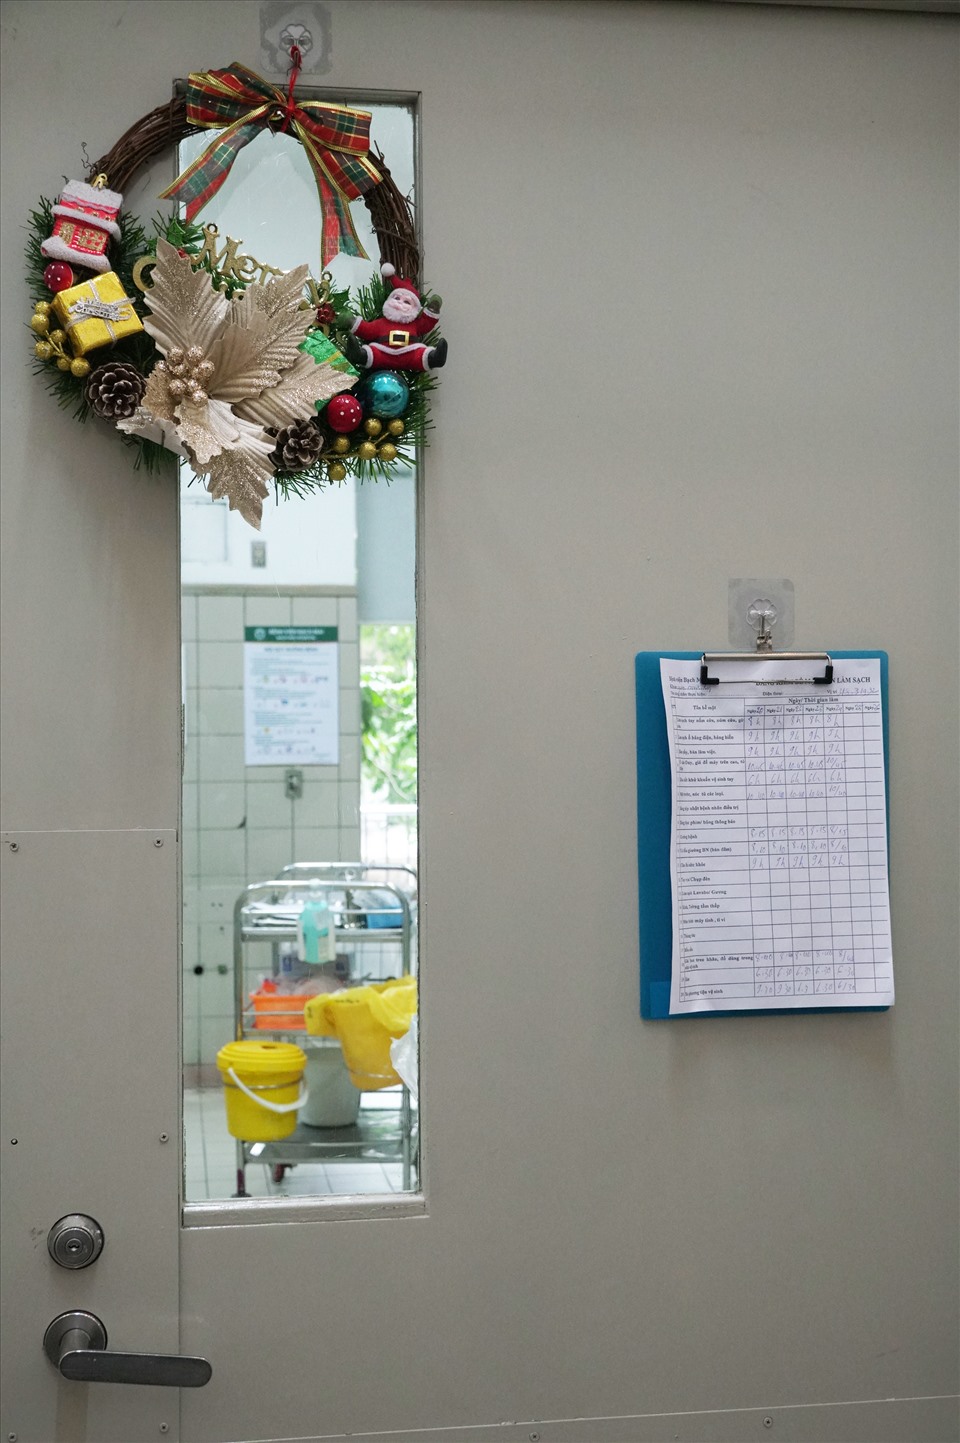 Tất cả các phòng bệnh đều được trang trí vòng hoa, chuông Giáng sinh.